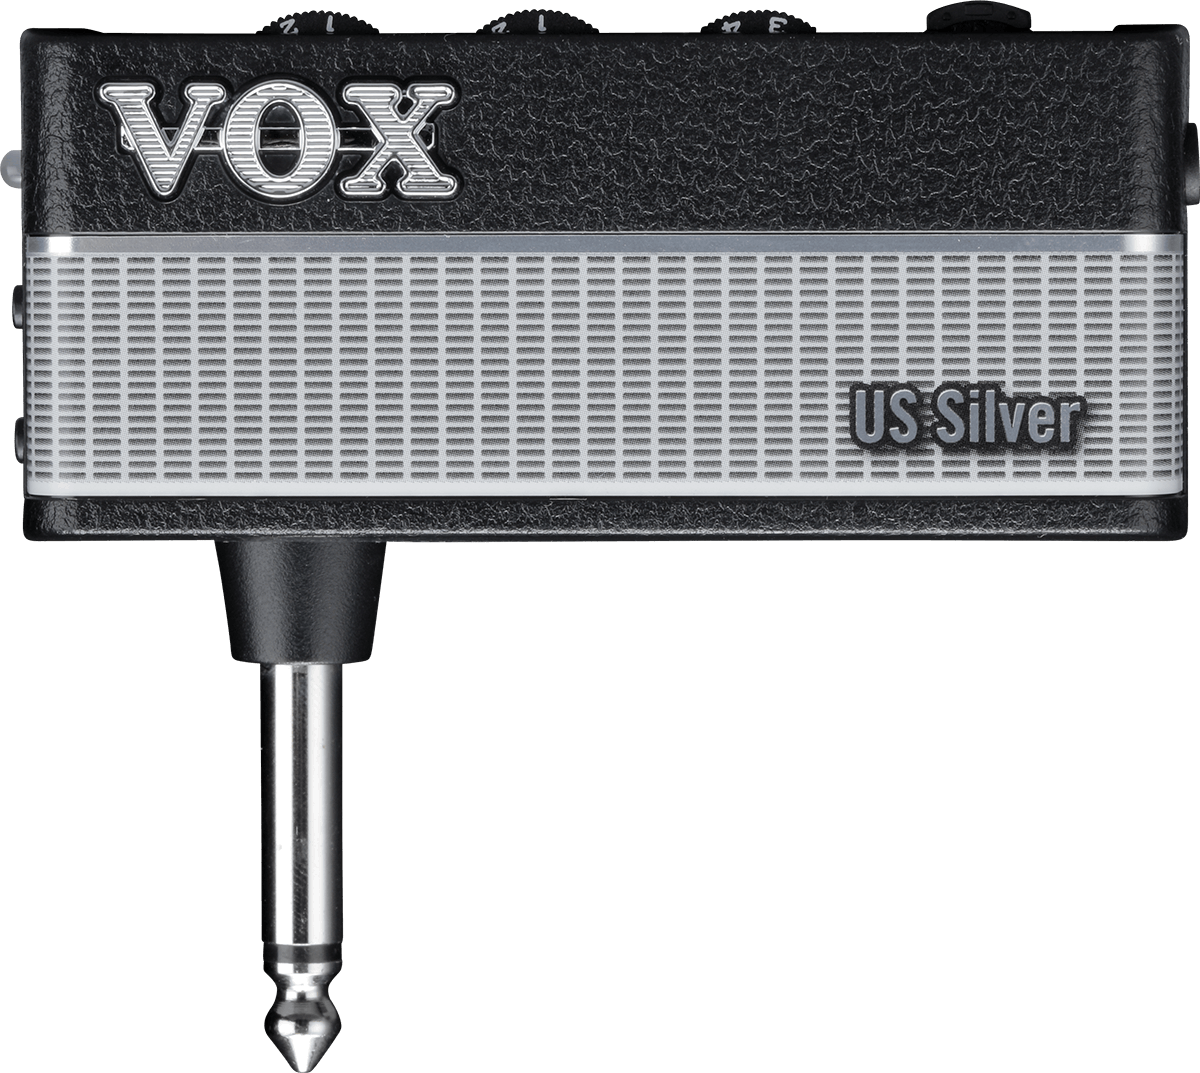 Vox Amplug Us Silver V3 - Electric guitar preamp - Variation 1